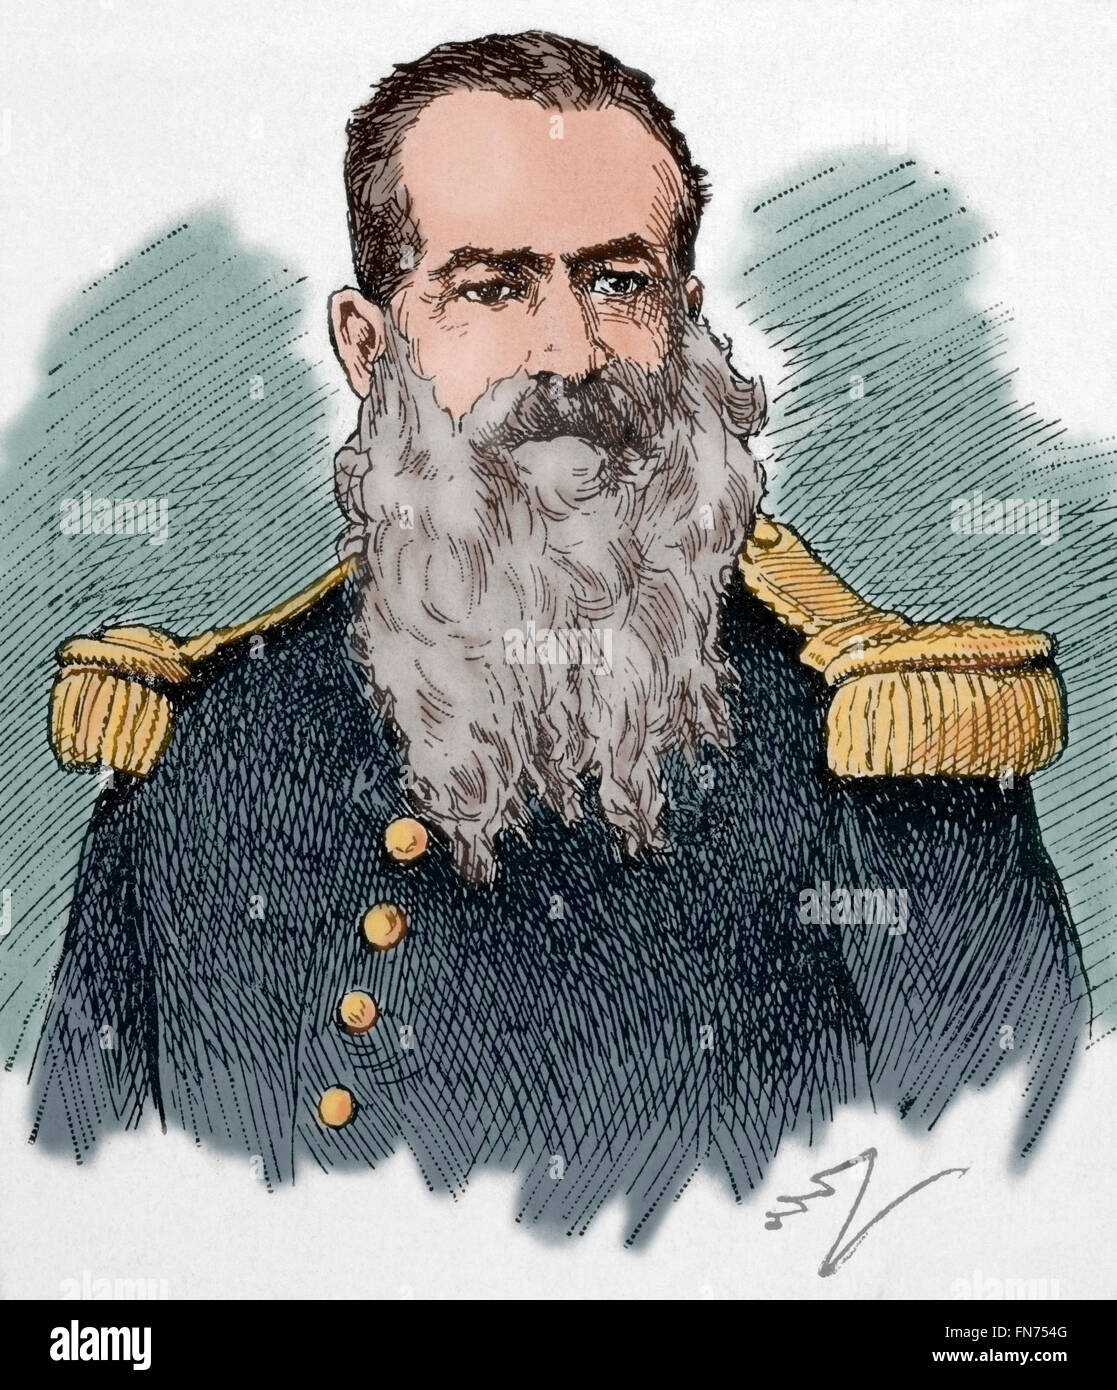 General José Calixto Mendizabal Aparicio (1837-1898). Guatemaltekischer Politiker. Minister für Krieg und Vice-Präsident von Guatemala. Porträt. Gravur. Farbige. Stockfoto